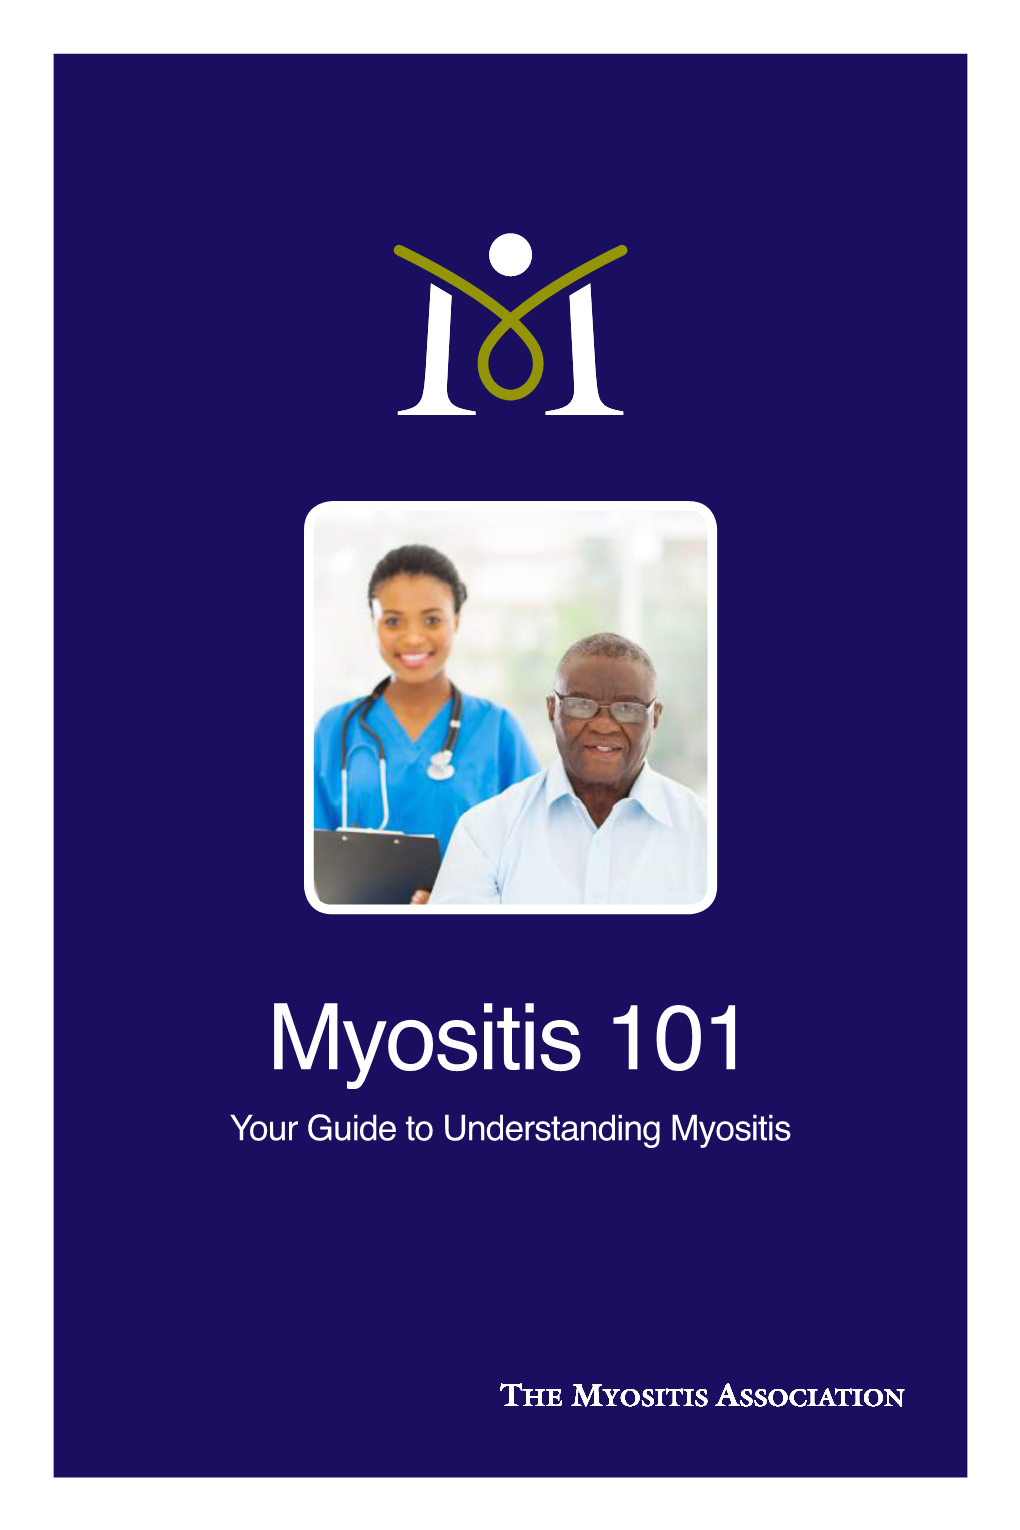 Myositis 101 Your Guide to Understanding Myositis